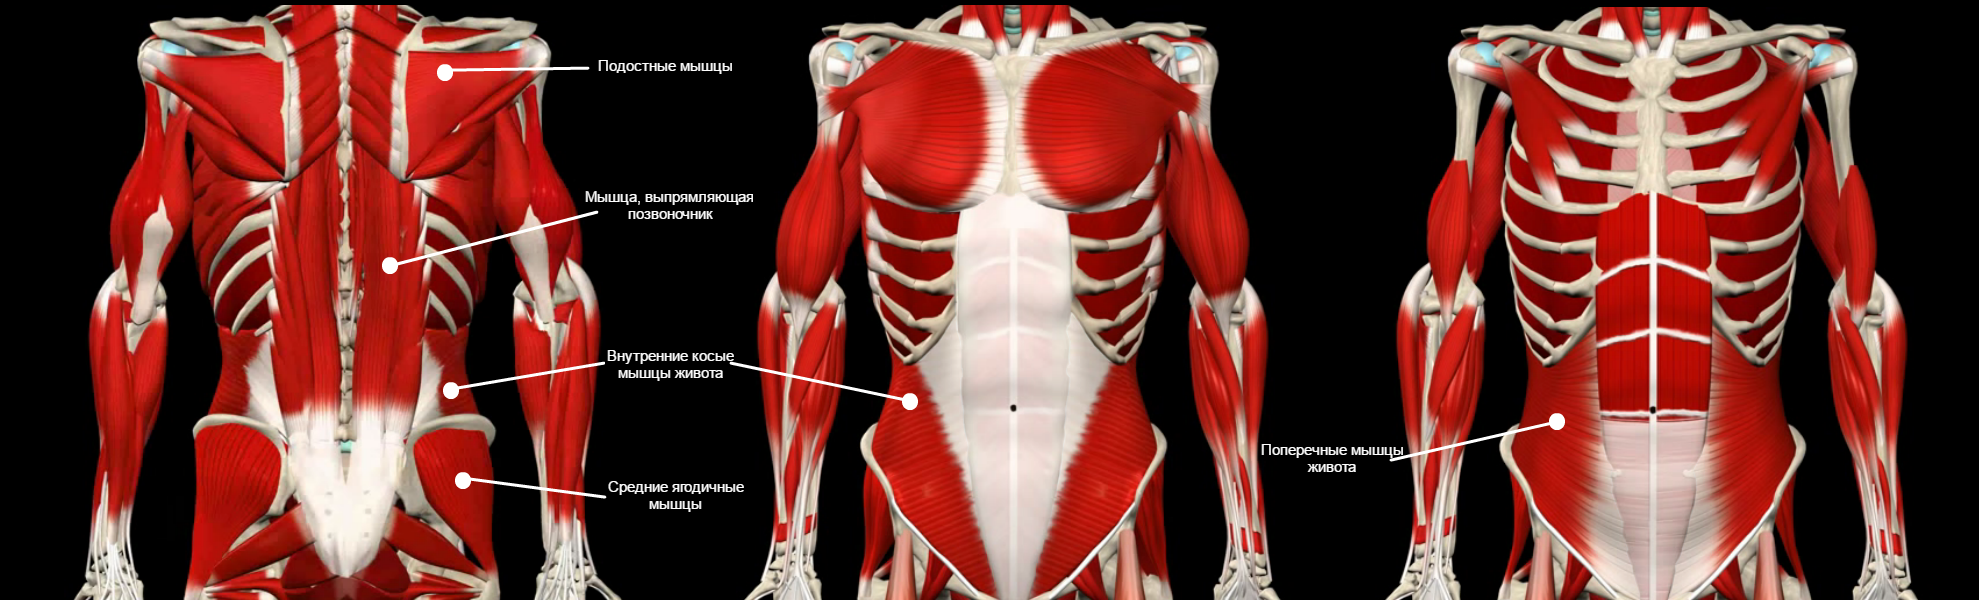 Что такое мышцы кора и где они находятся фото